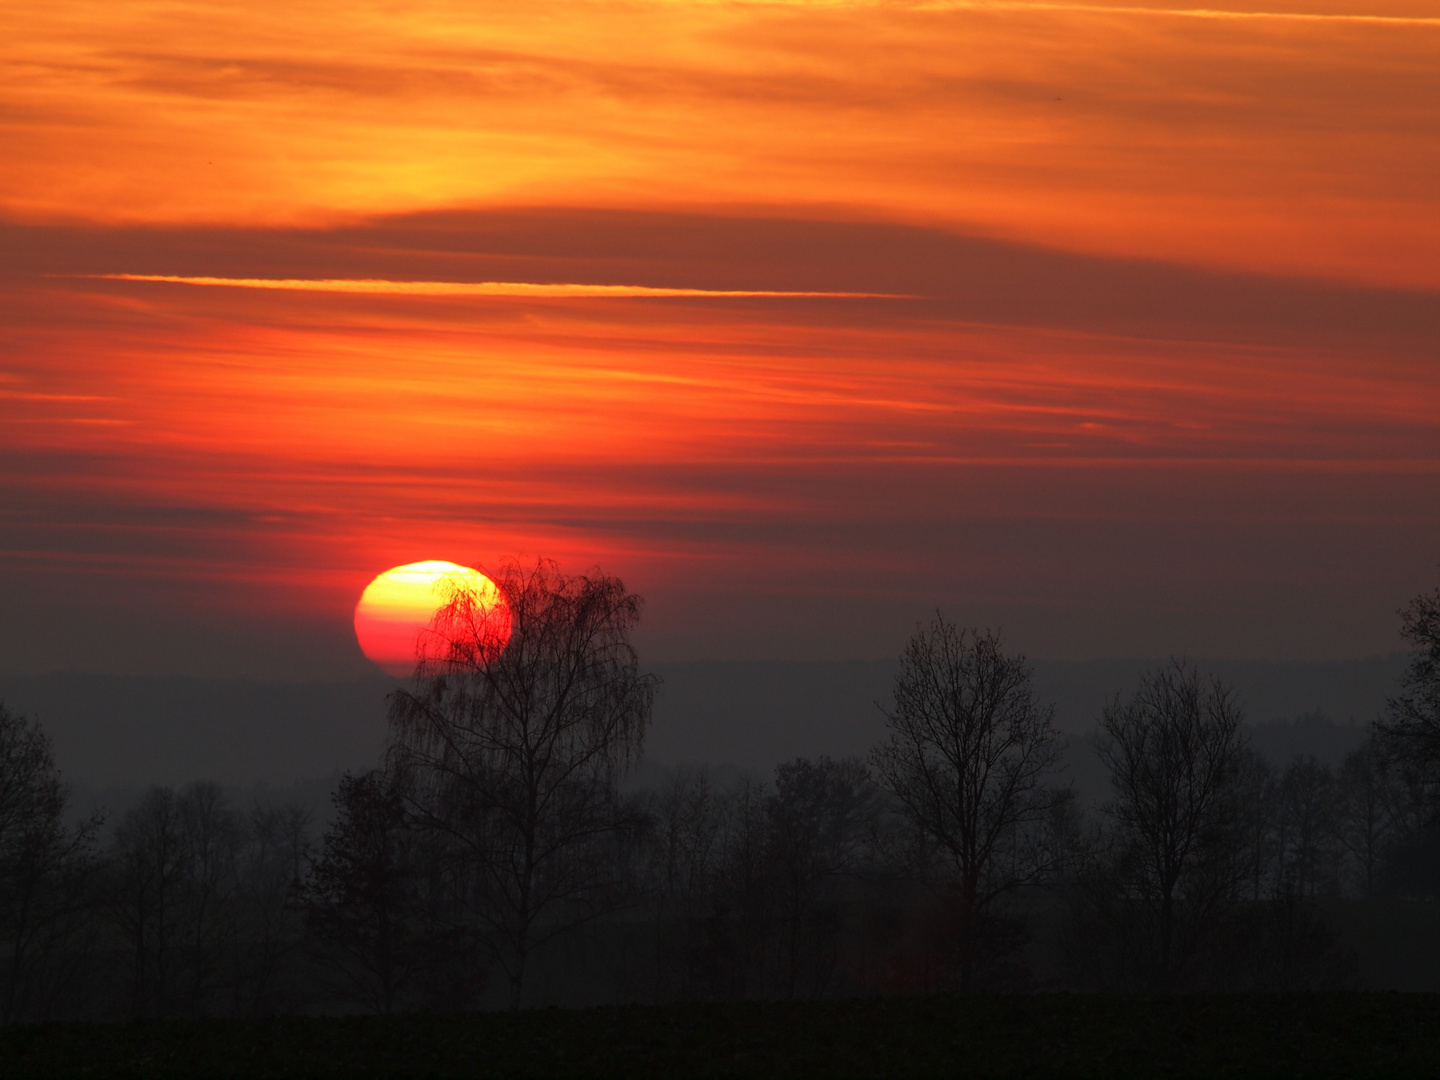 Sonnenuntergang mit reflexion am Horizont in Bad Kissingen